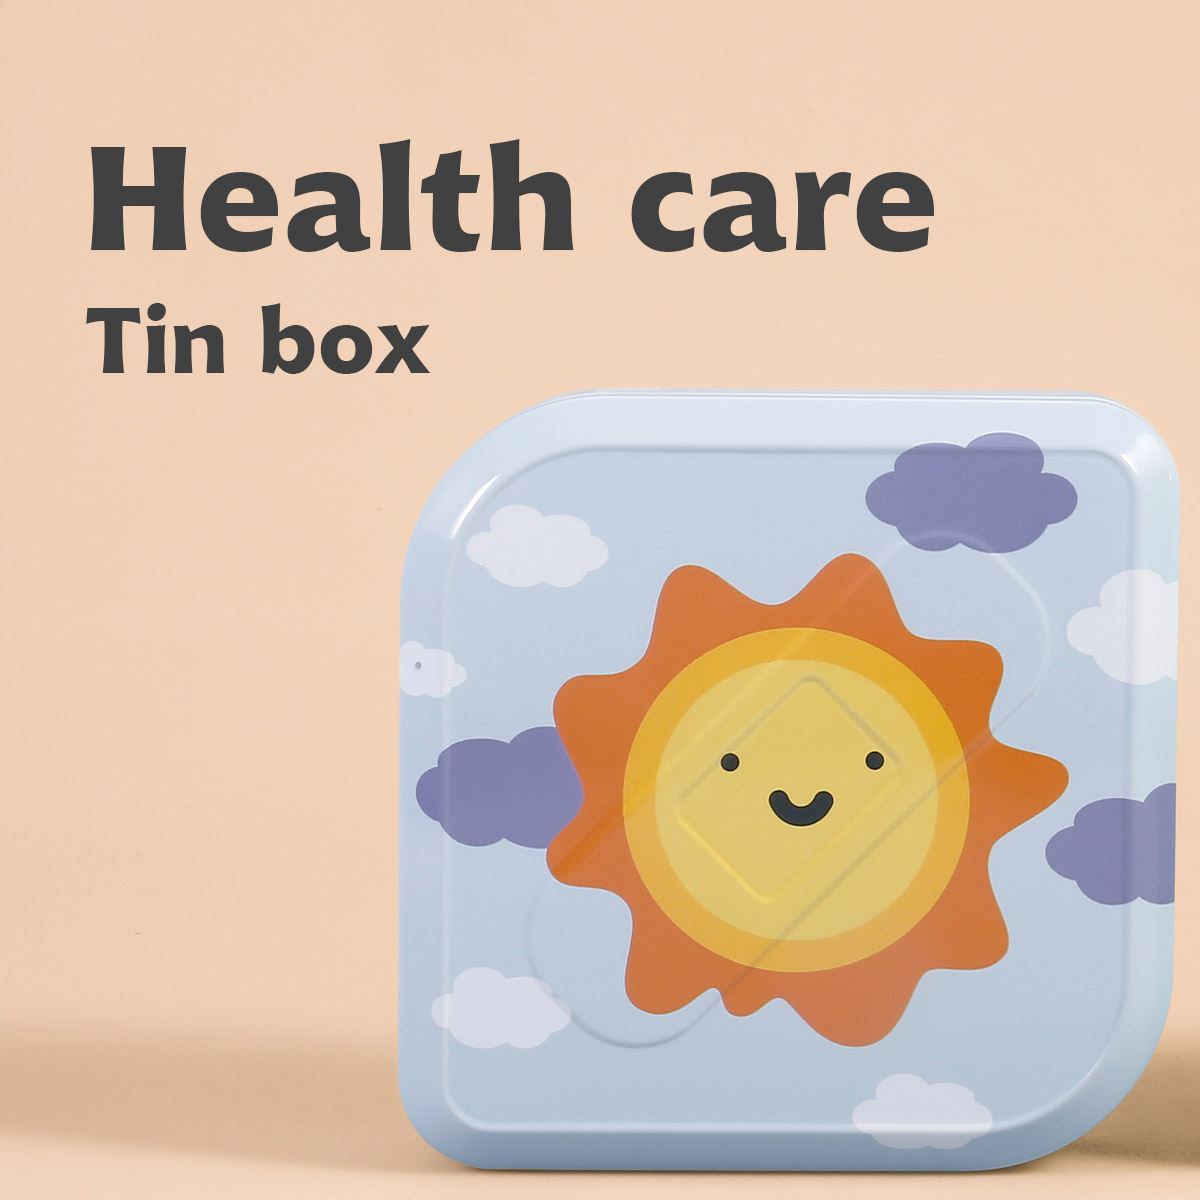 Caixa de llauna per a la salut